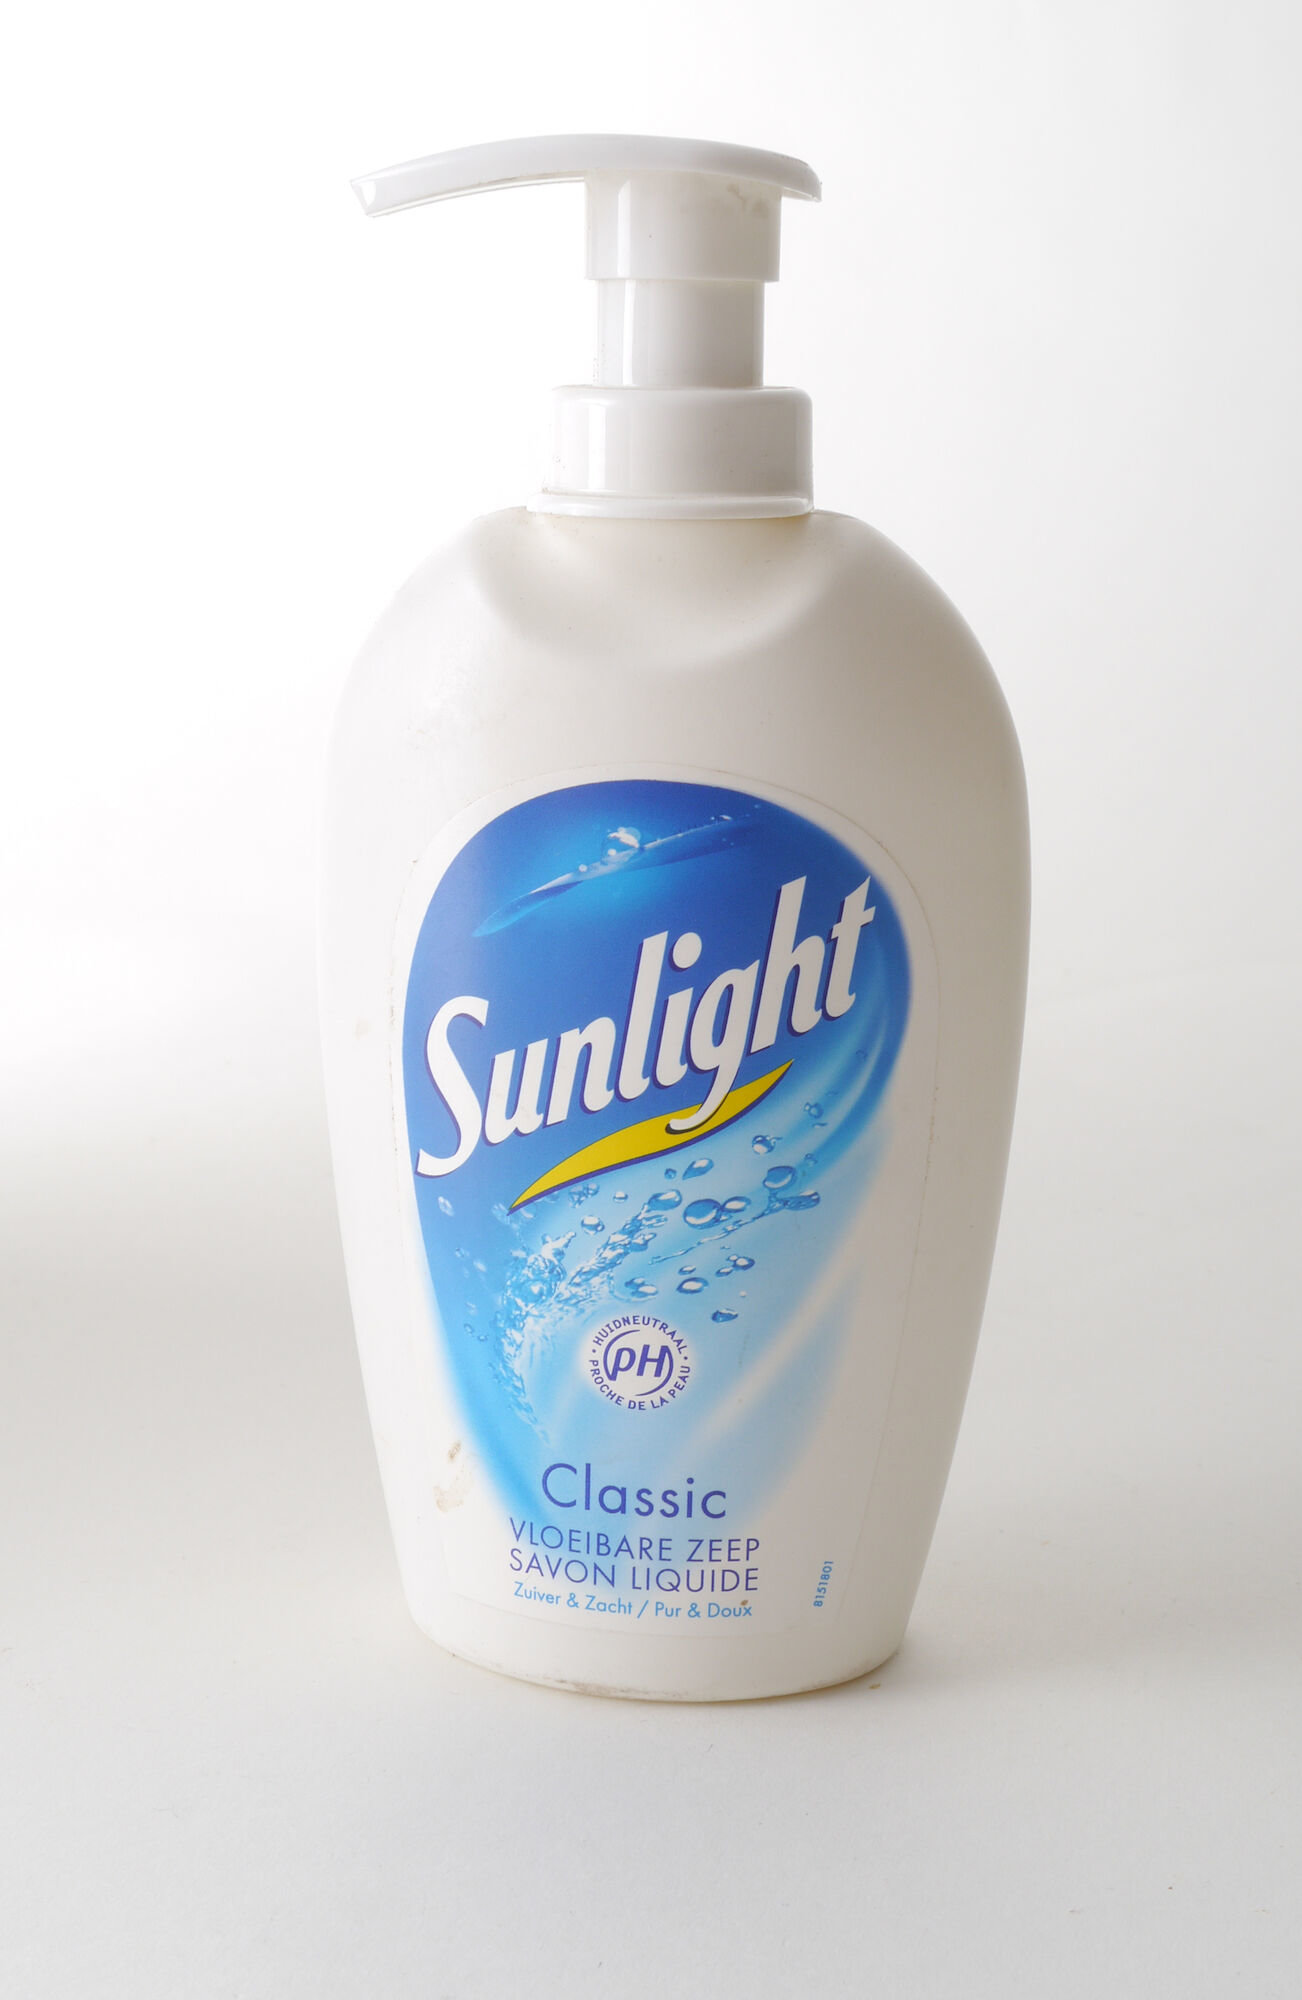 Handzeep van het merk Sunlight in fles met pomp